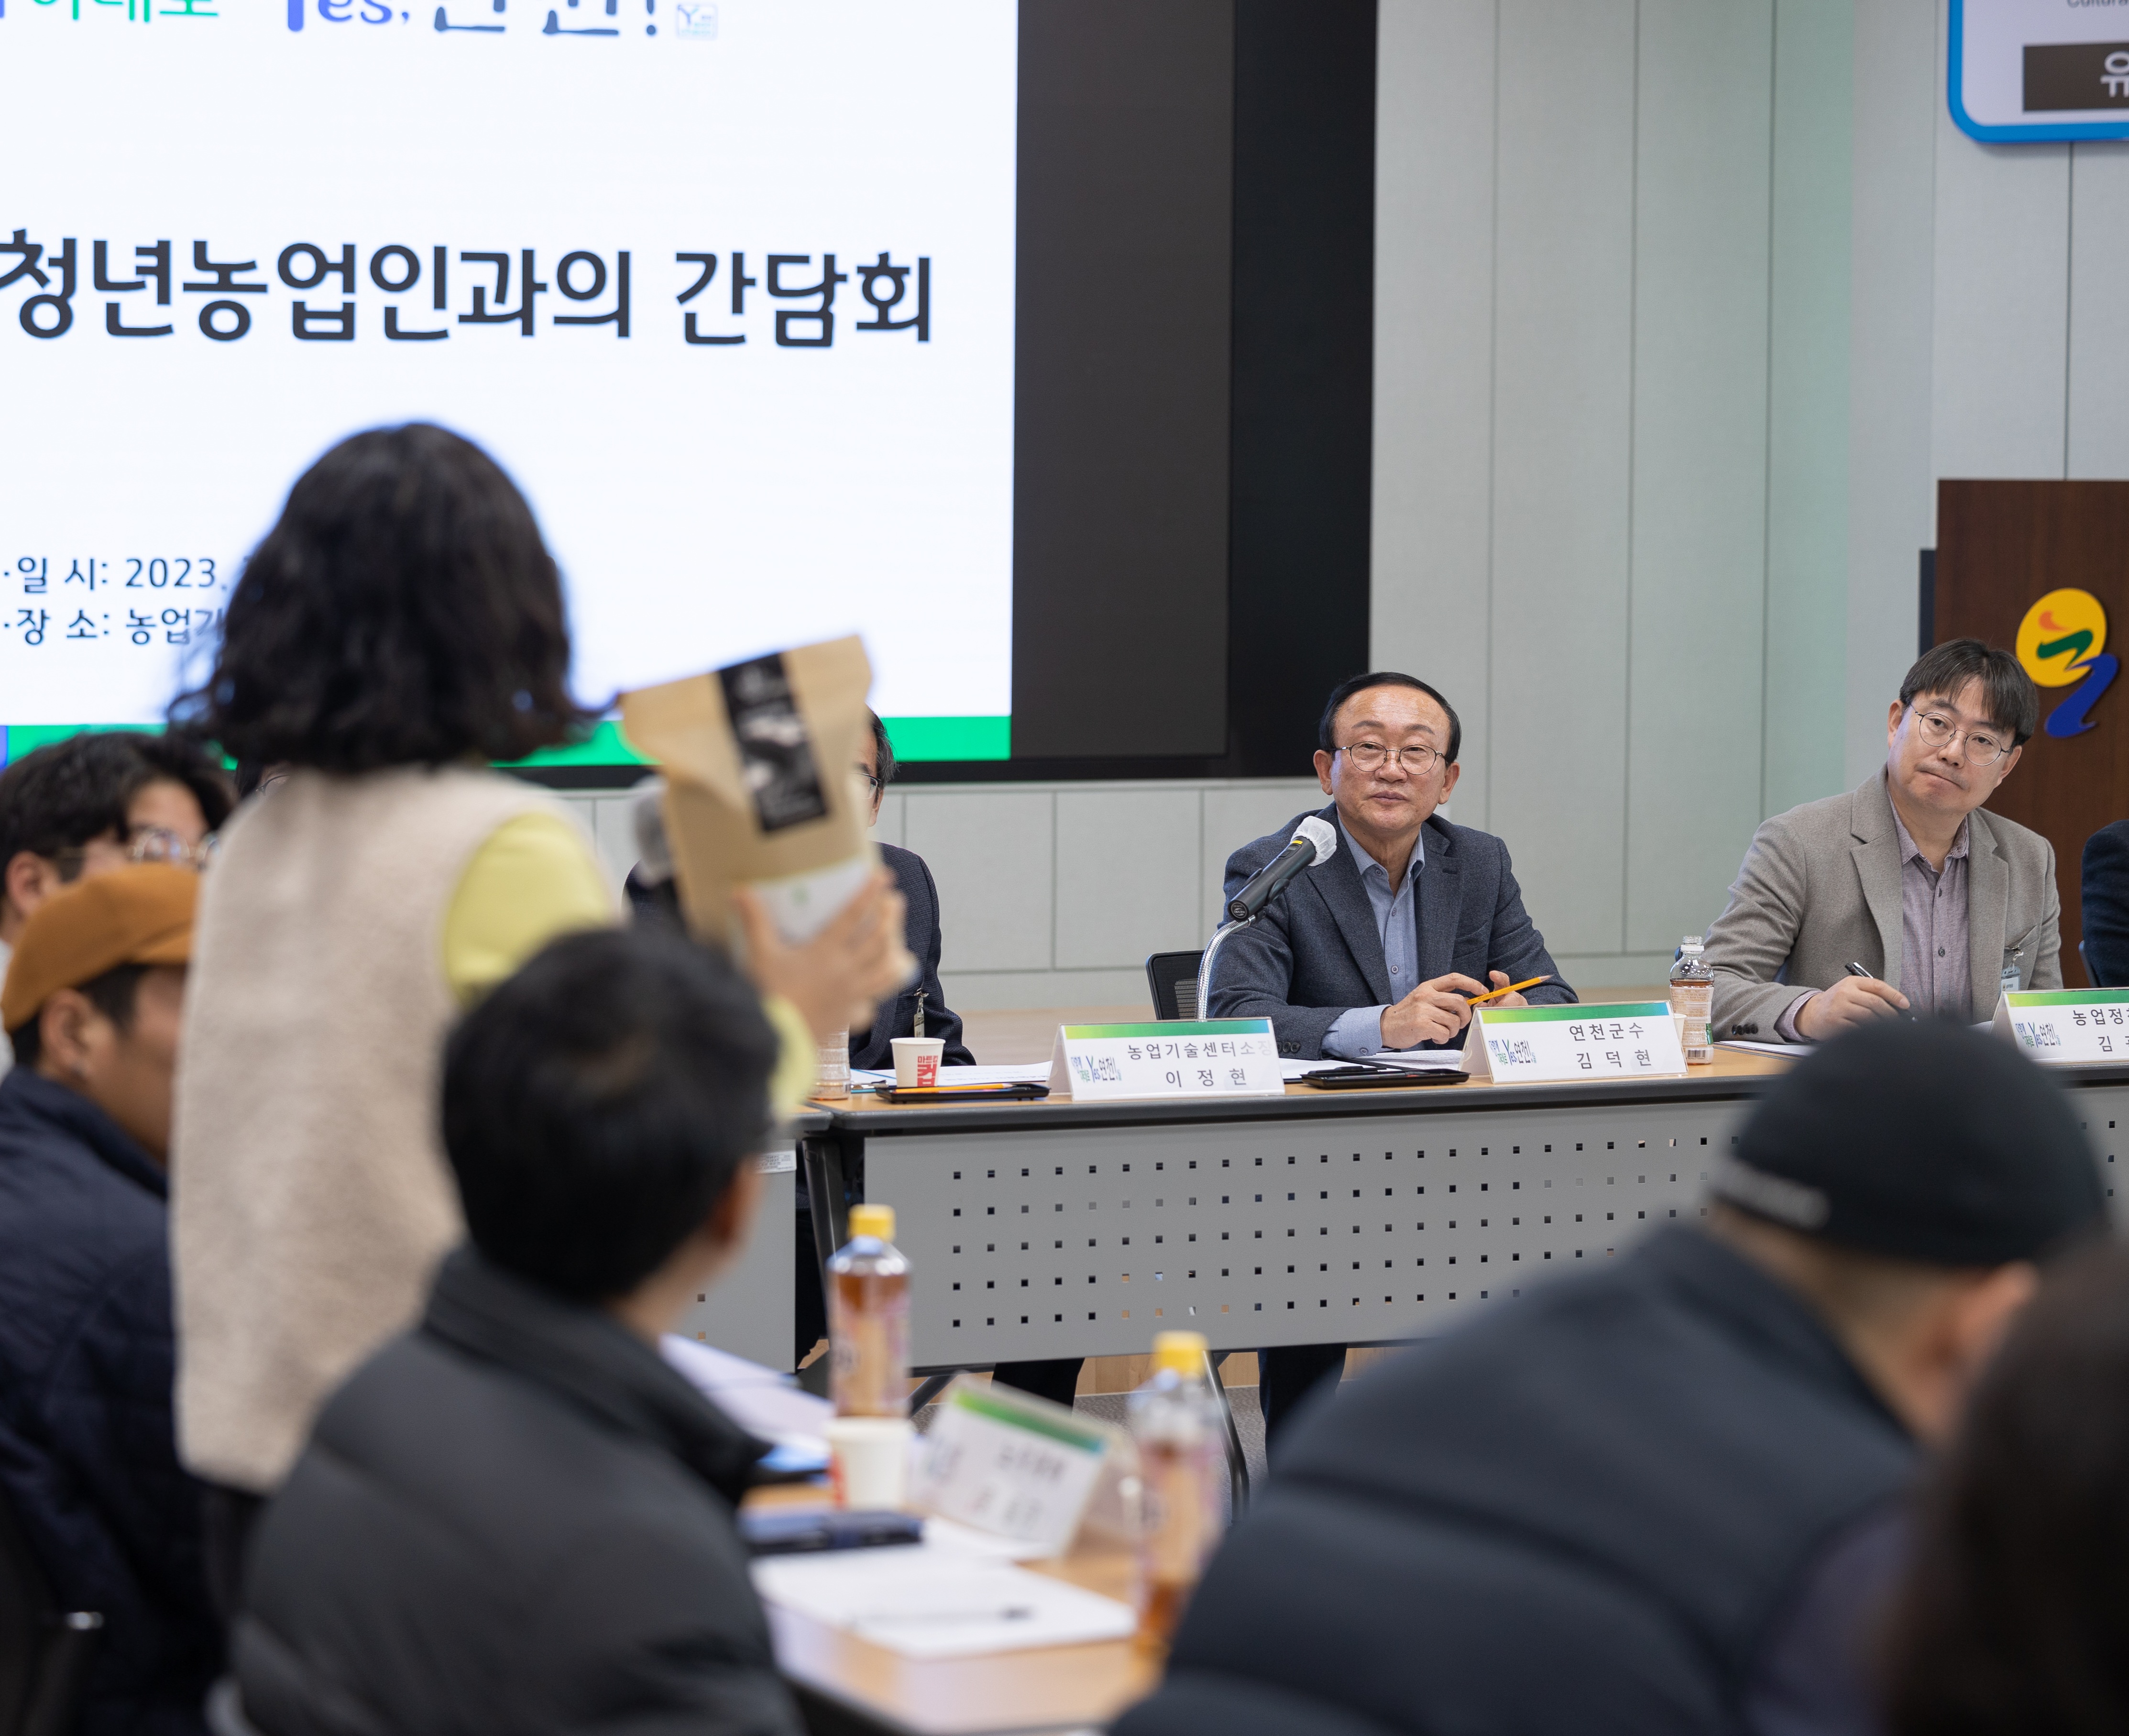 김덕현 연천군수, 청년농업인과 소통간담회 개최 이미지 2 - 본문에 자세한설명을 제공합니다.